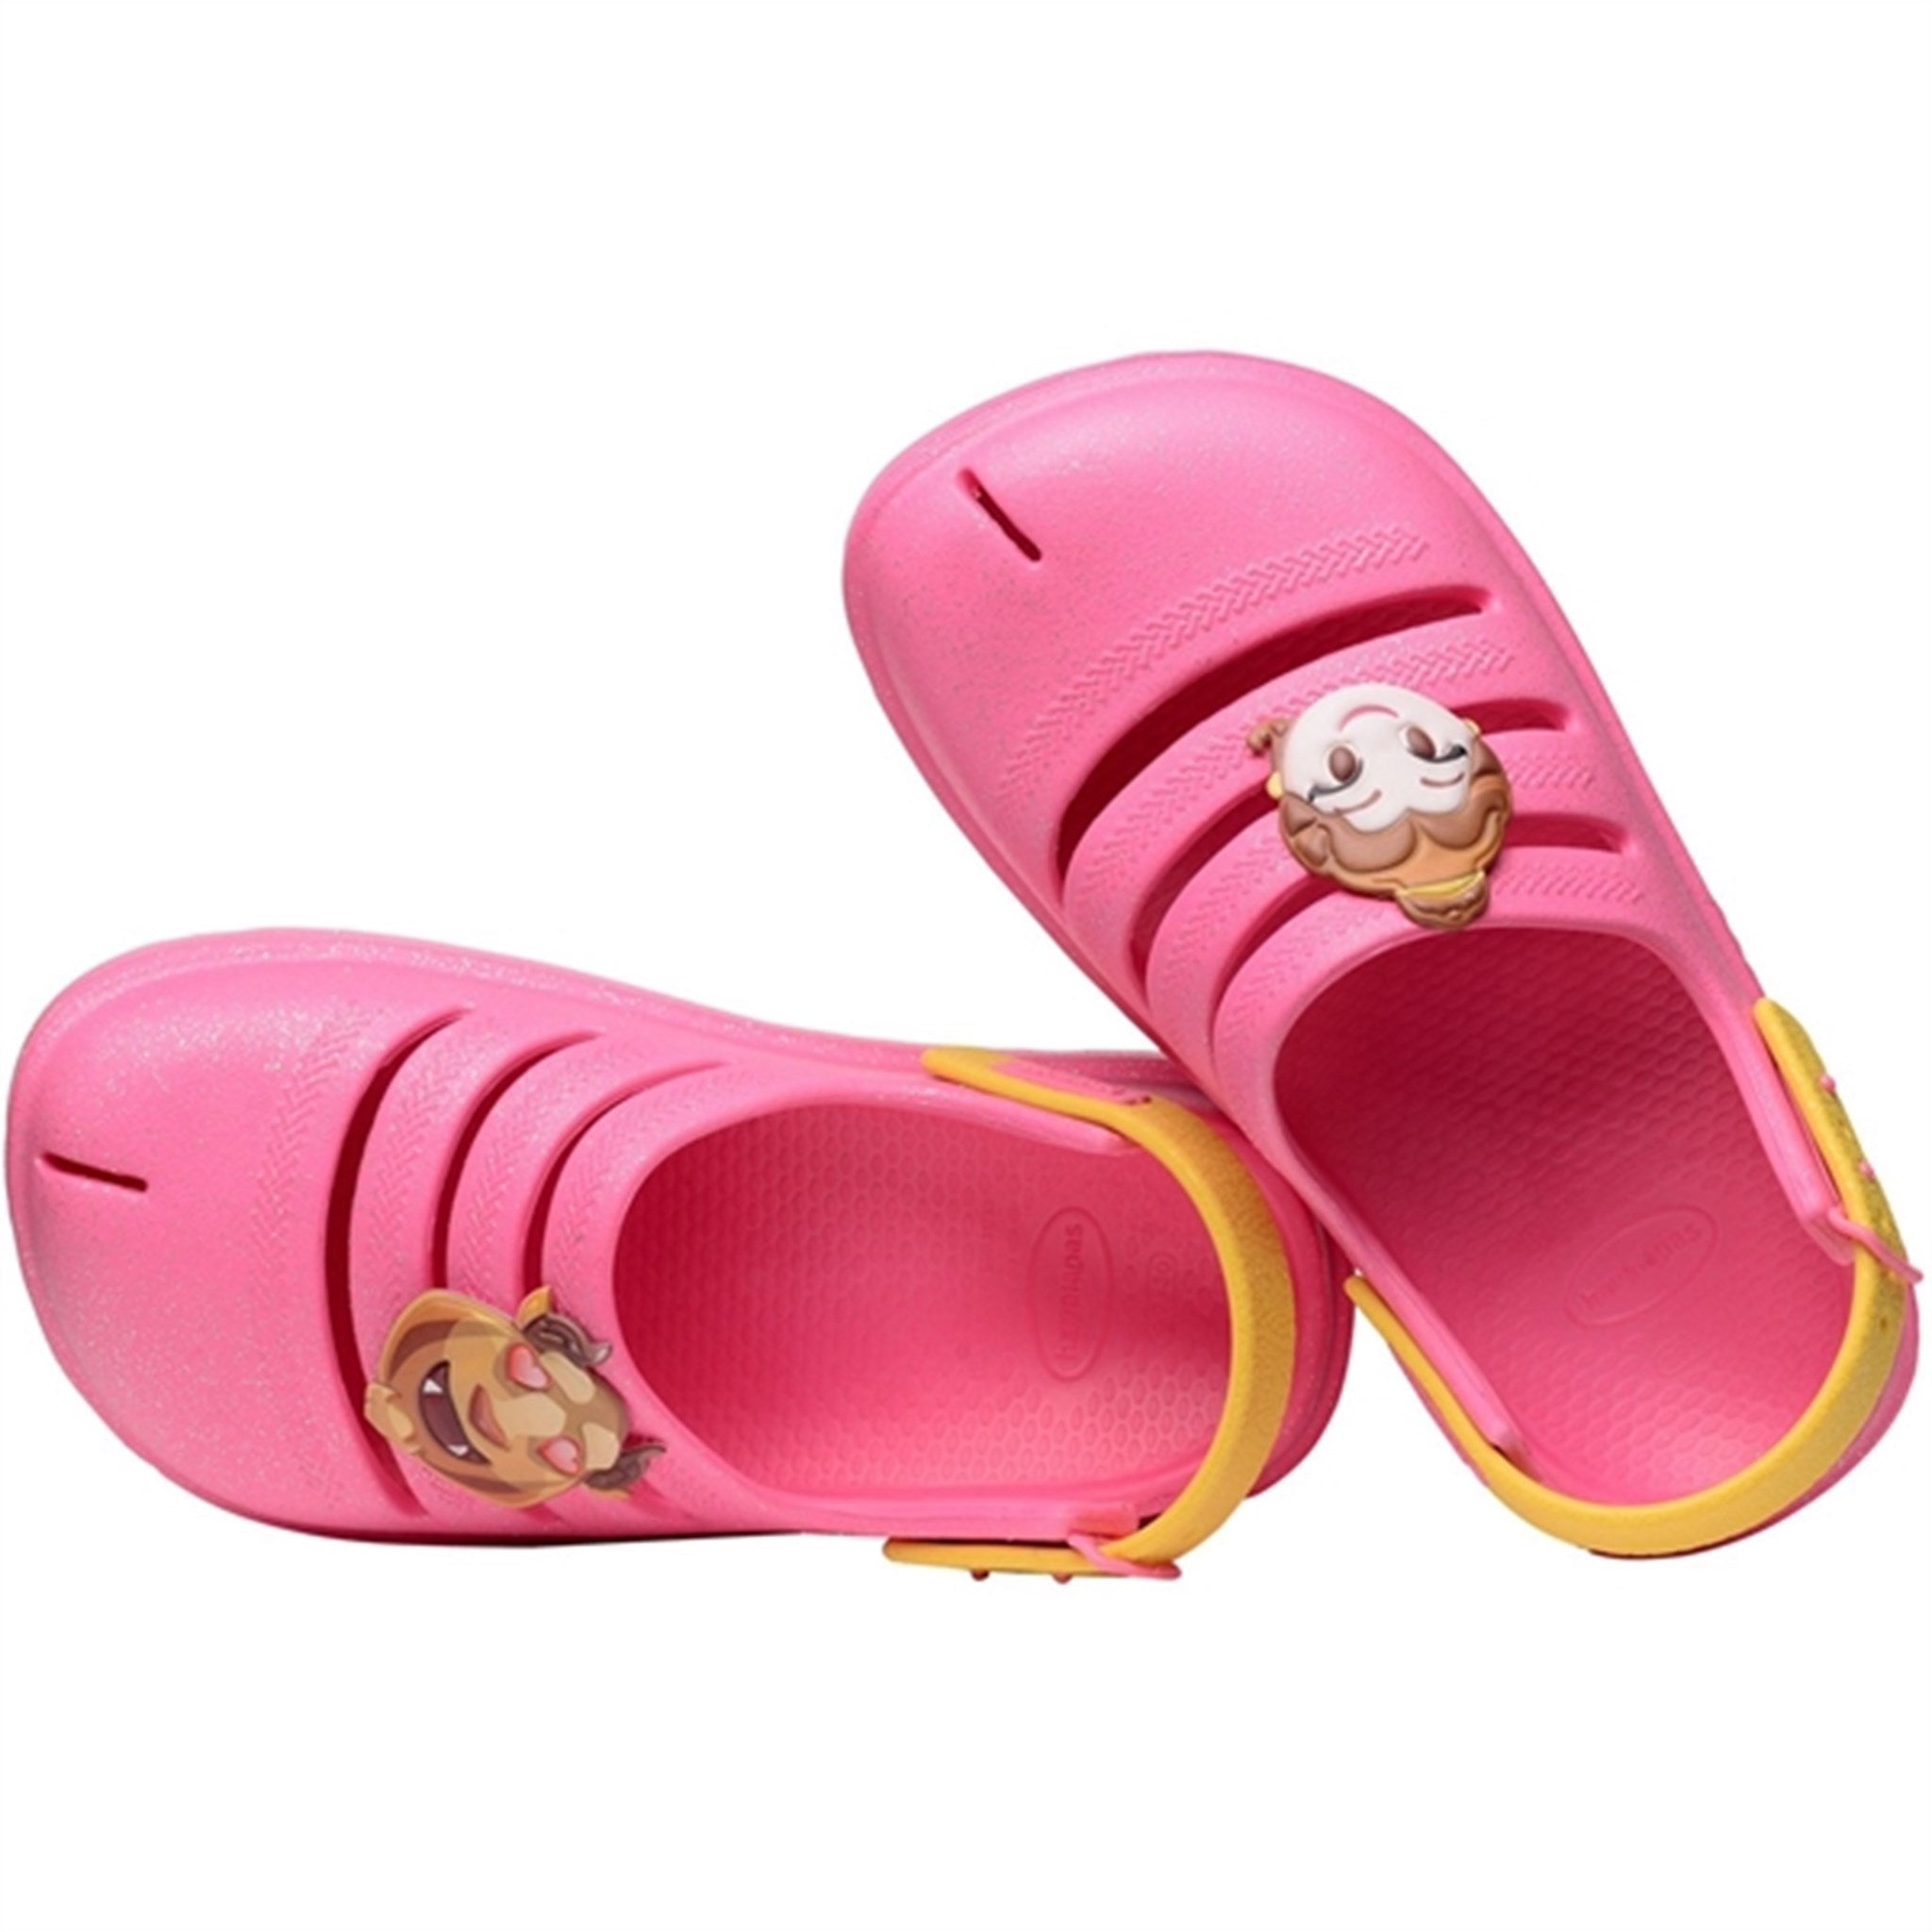 Havaianas Kids Sandals Princesas Ciber Pink 4